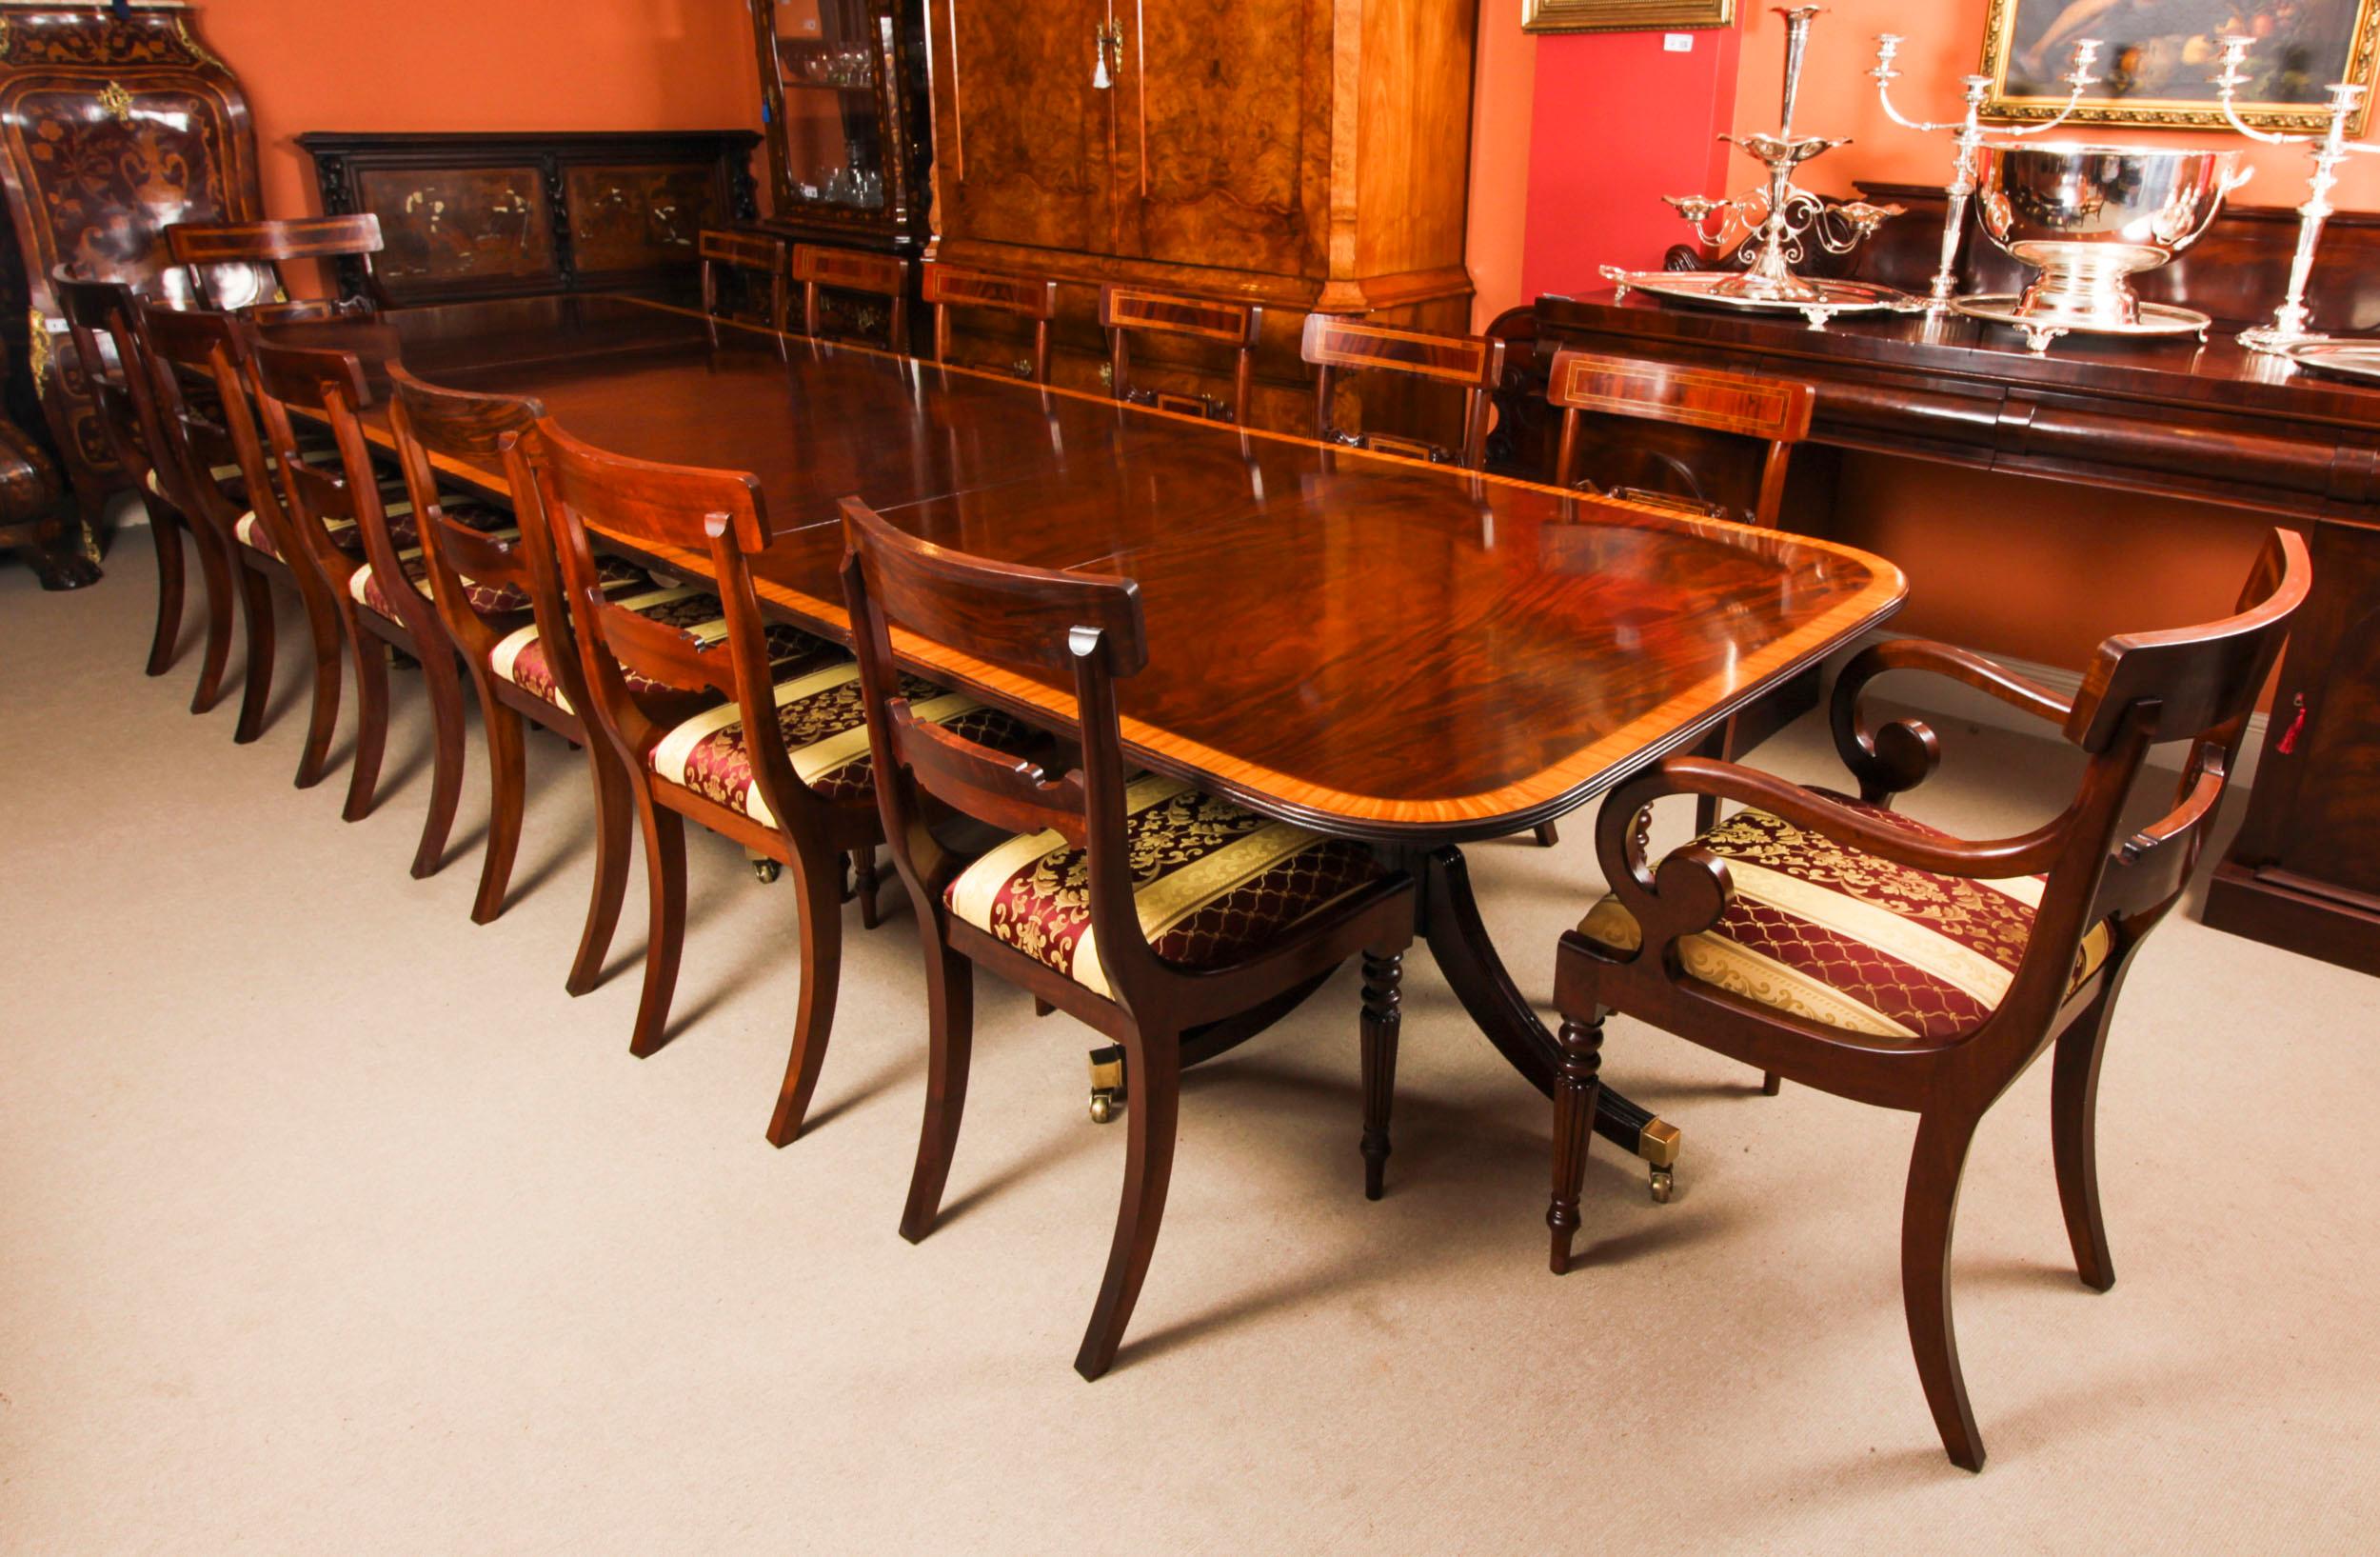 Il s'agit d'une superbe table de salle à manger Vintage Regency Revival de 13 pieds datant de la seconde moitié du 20ème siècle.

Le plateau de la table a été réalisé en acajou flammé et présente un superbe décor de bandes transversales en bois